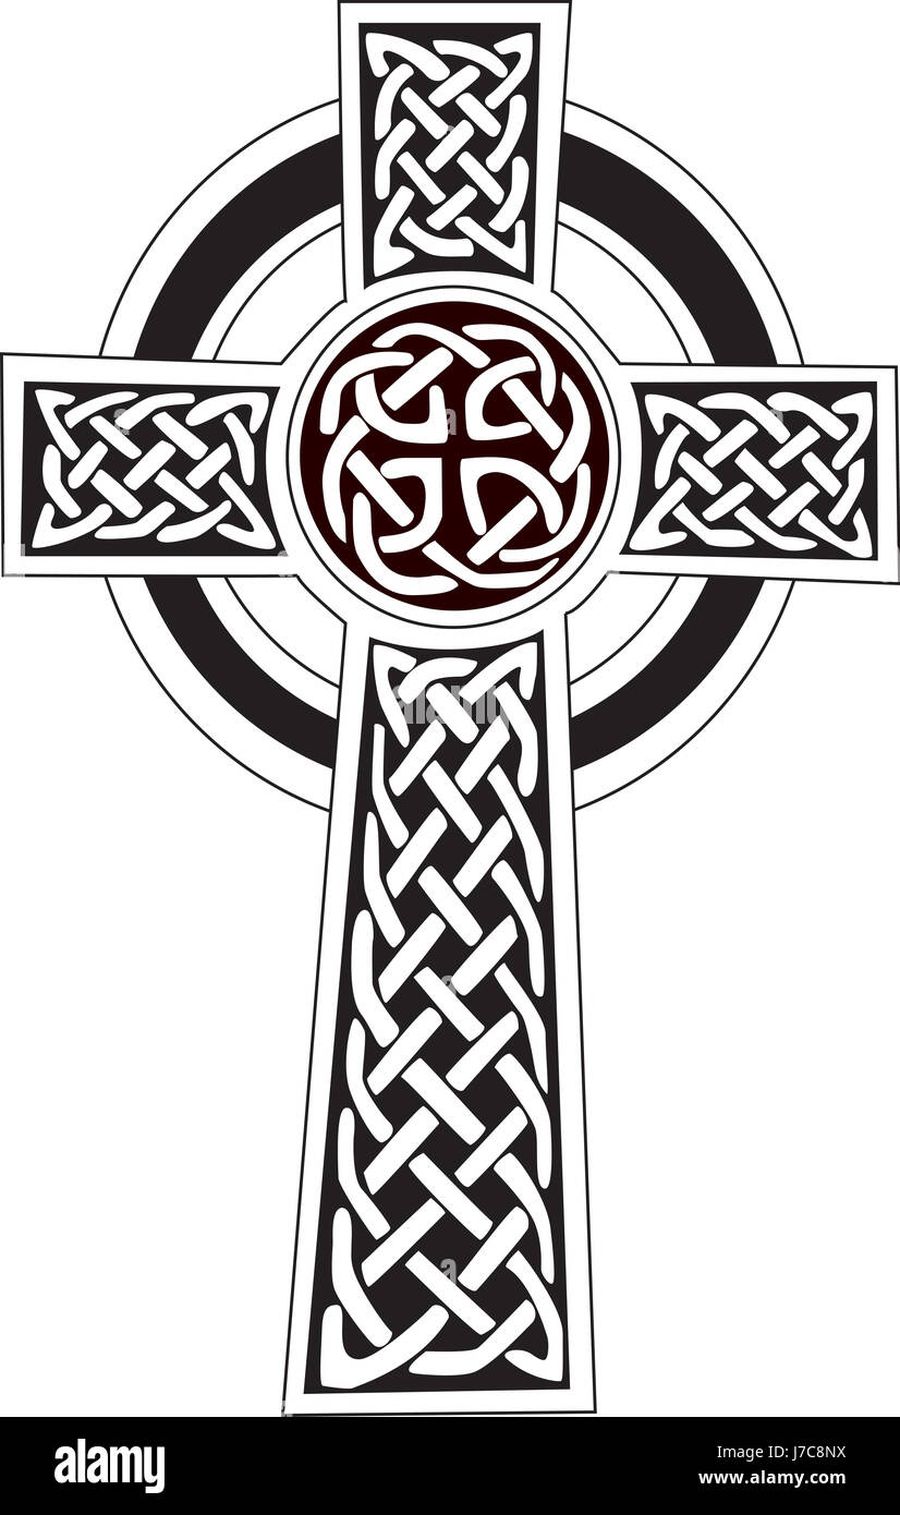 Ce este crucea celtică, simbolul folosit și de neonaziști, pe care UEFA a ochit-o în peluză și pentru care a sancționat-o pe FCSB